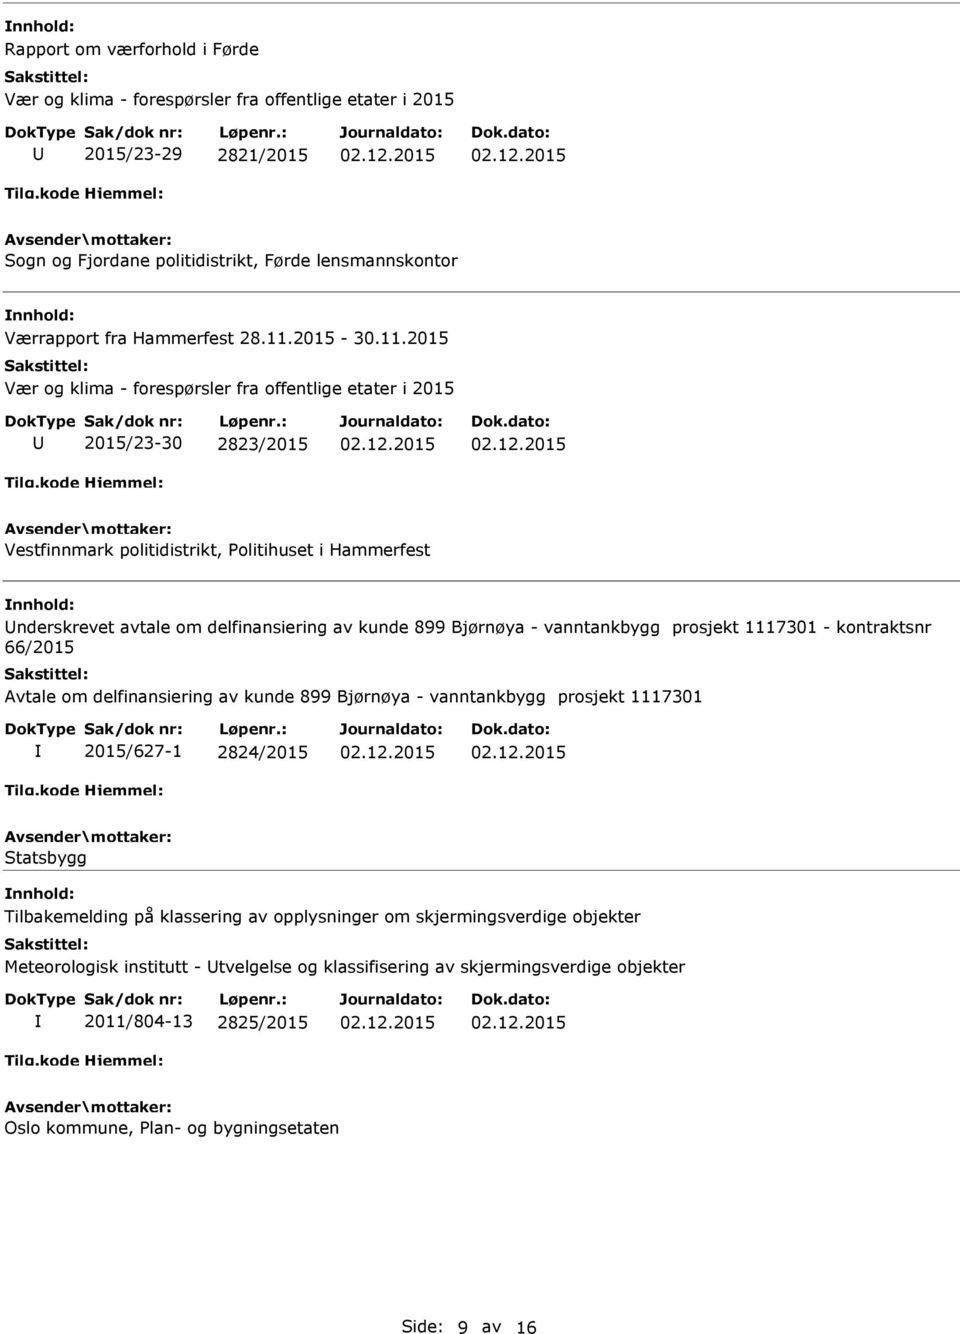 Bjørnøya - vanntankbygg prosjekt 1117301 - kontraktsnr 66/2015 Avtale om delfinansiering av kunde 899 Bjørnøya - vanntankbygg prosjekt 1117301 2015/627-1 2824/2015 Statsbygg Tilbakemelding på